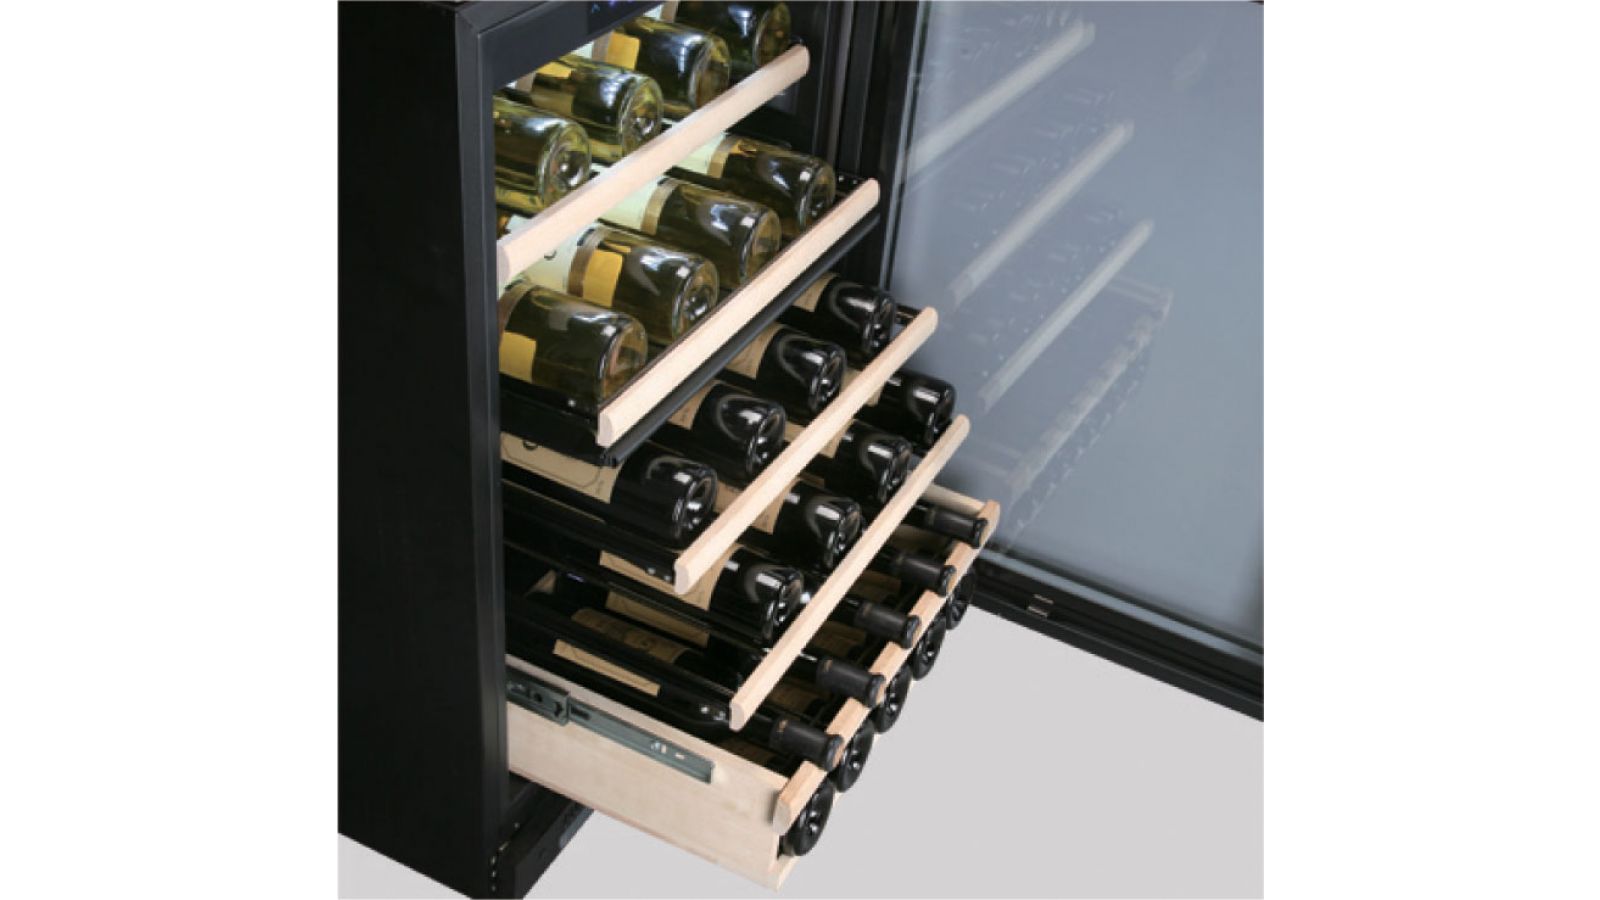 Haier 48-Bottle Capacity Built-In or Freestanding Wine Cellar